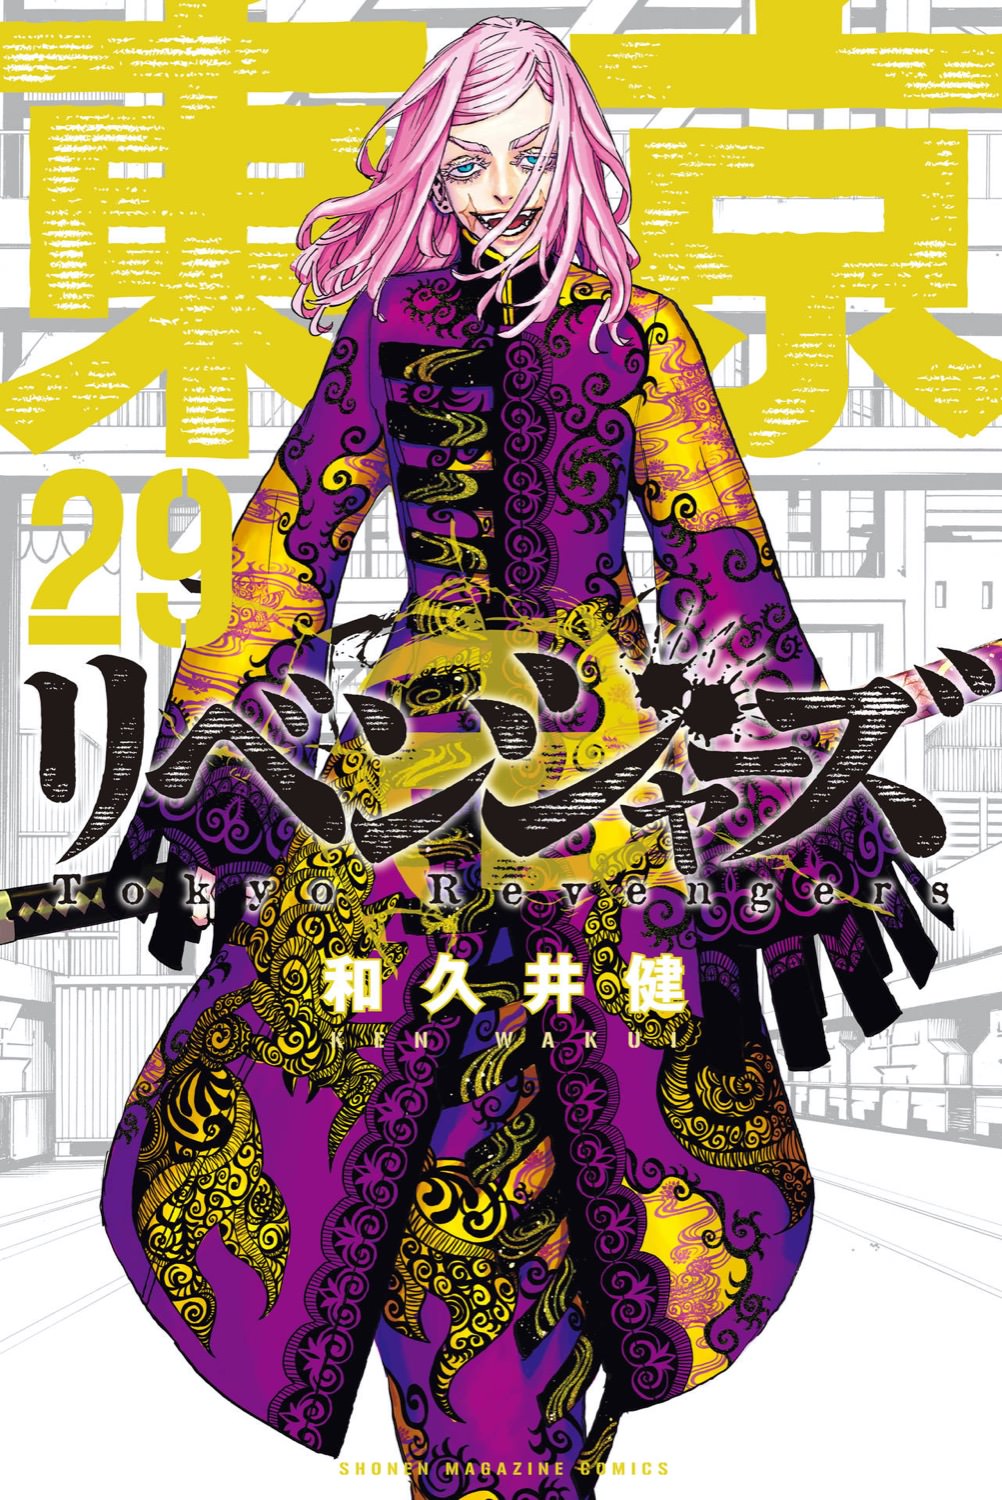 和久井健「東京卍リベンジャーズ」第29巻 2022年8月17日発売!